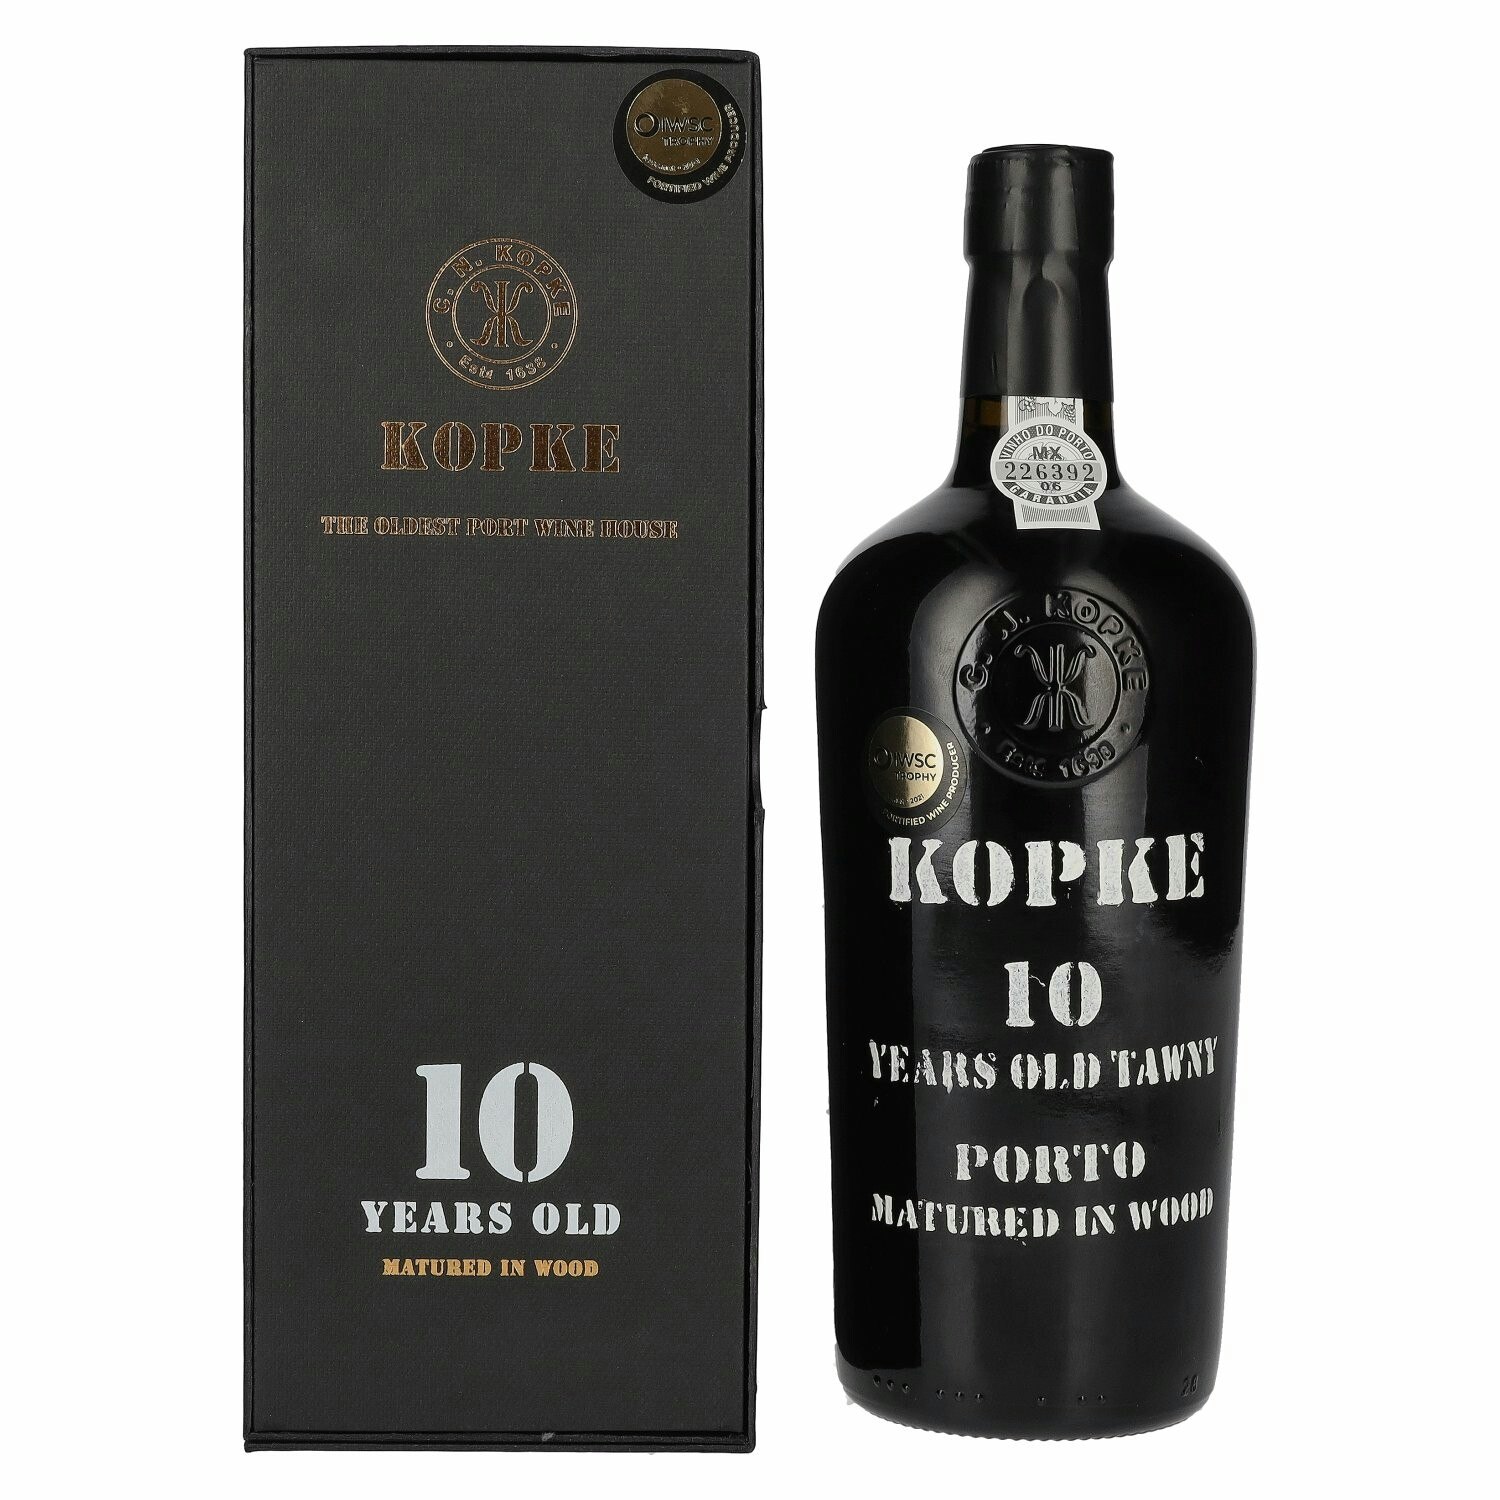 Kopke 10 Years Old TAWNY Porto 20% Vol. 0,75l in Giftbox